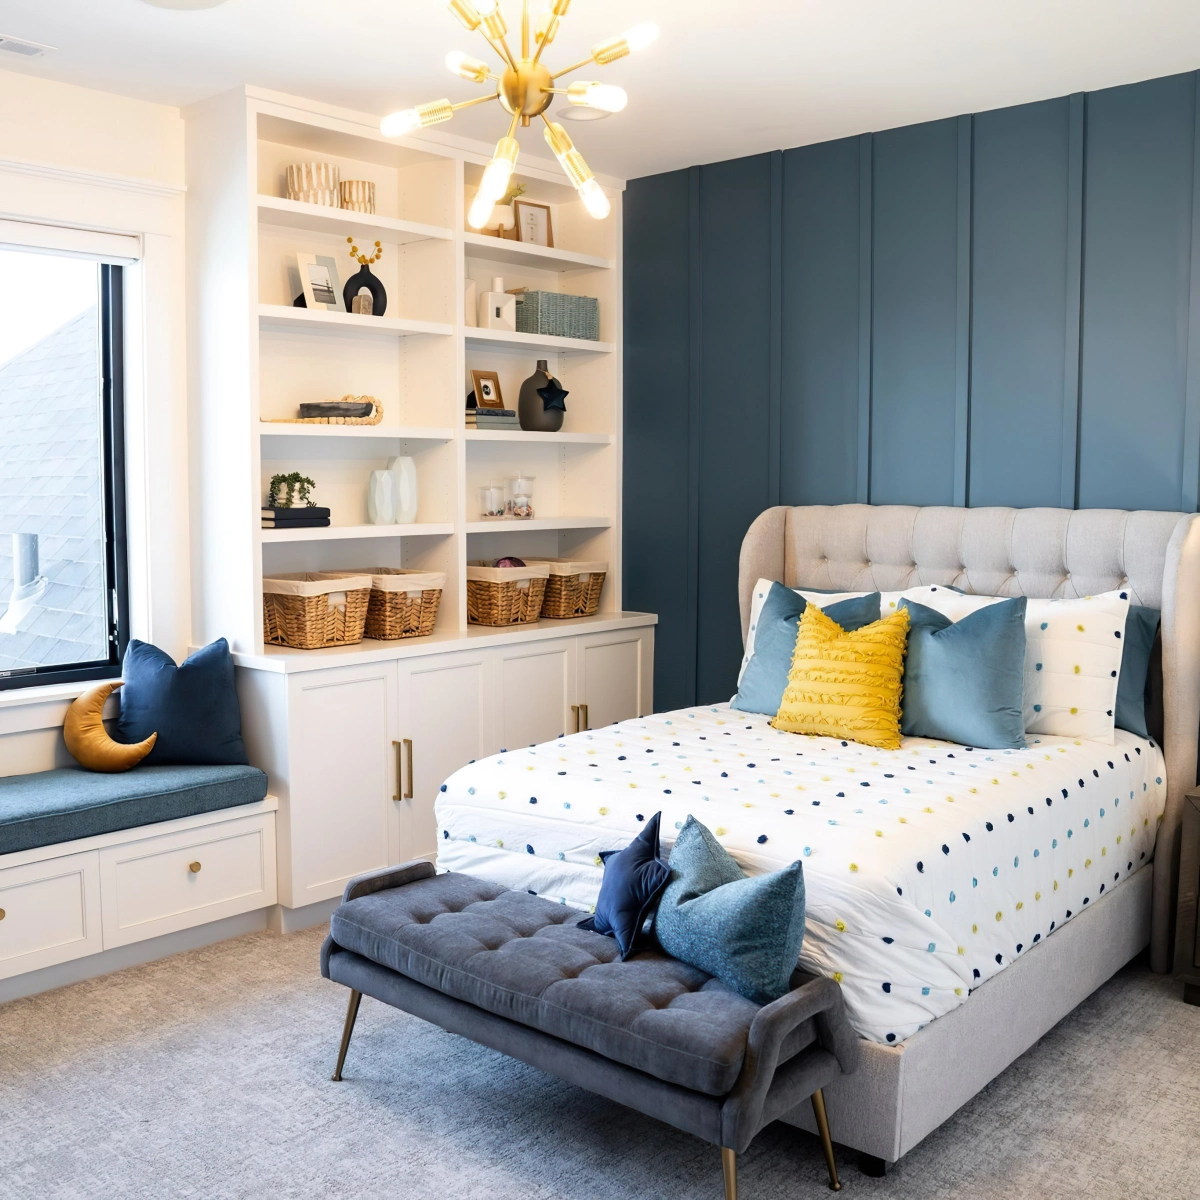 deco chambre ado mur d accent peinture bleu fonce tete de lit boutonne gris